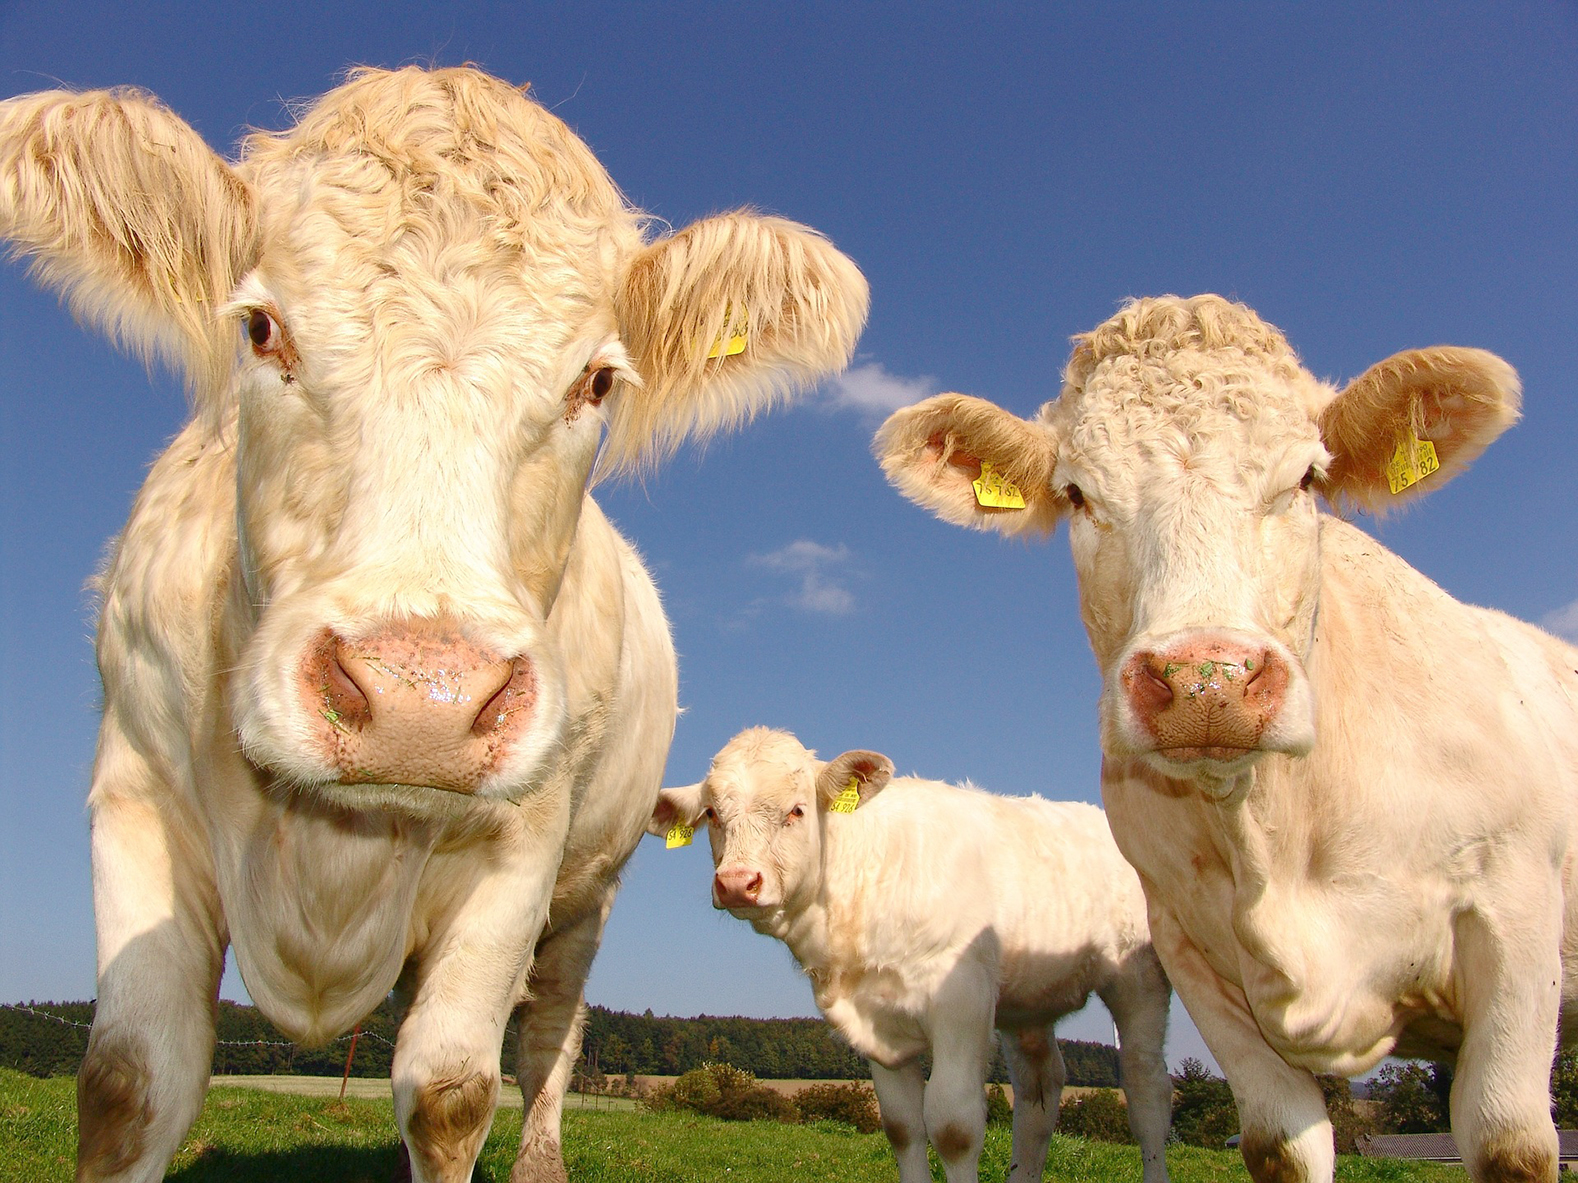 Au 1er janvier 2022, les éleveurs devront avoir signé un contrat de trois ans minimum pour les jeunes bovins, génisses, et vaches allaitantes de races à viande. Une mesure issue de la loi Egalim 2.